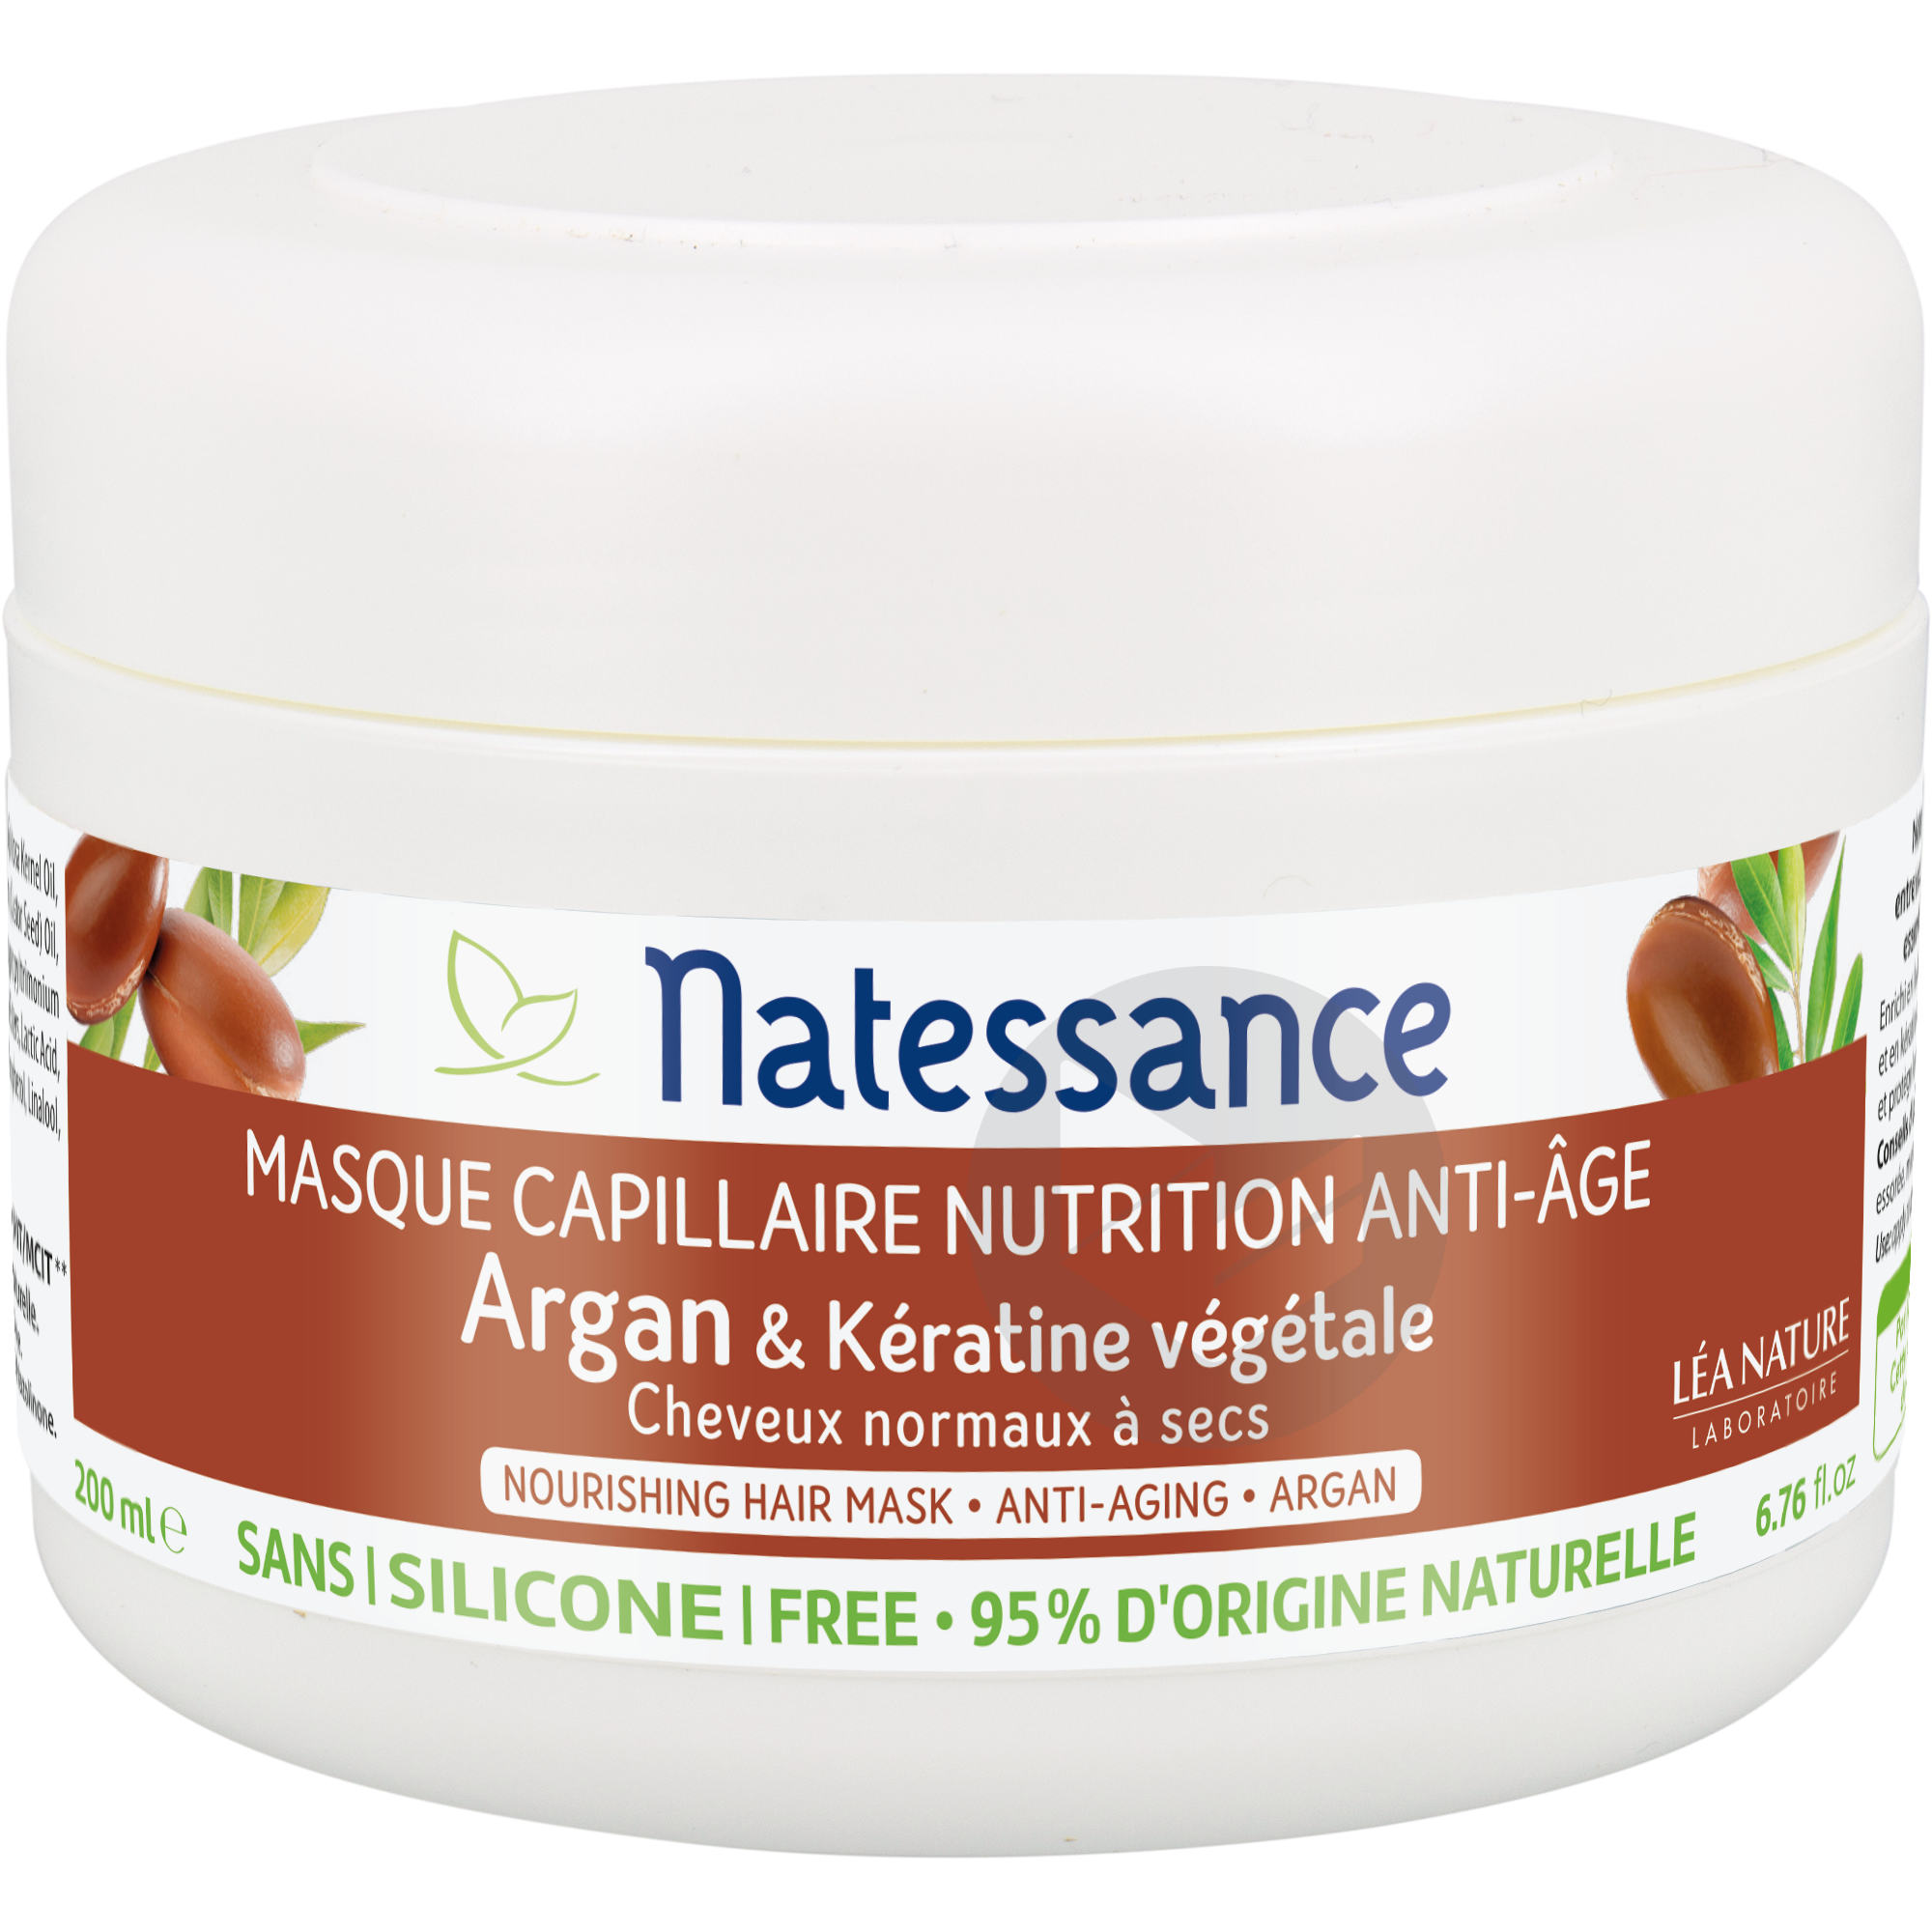 Masque capillaire nutrition - Argan & Kératine végétale - Anti-âge